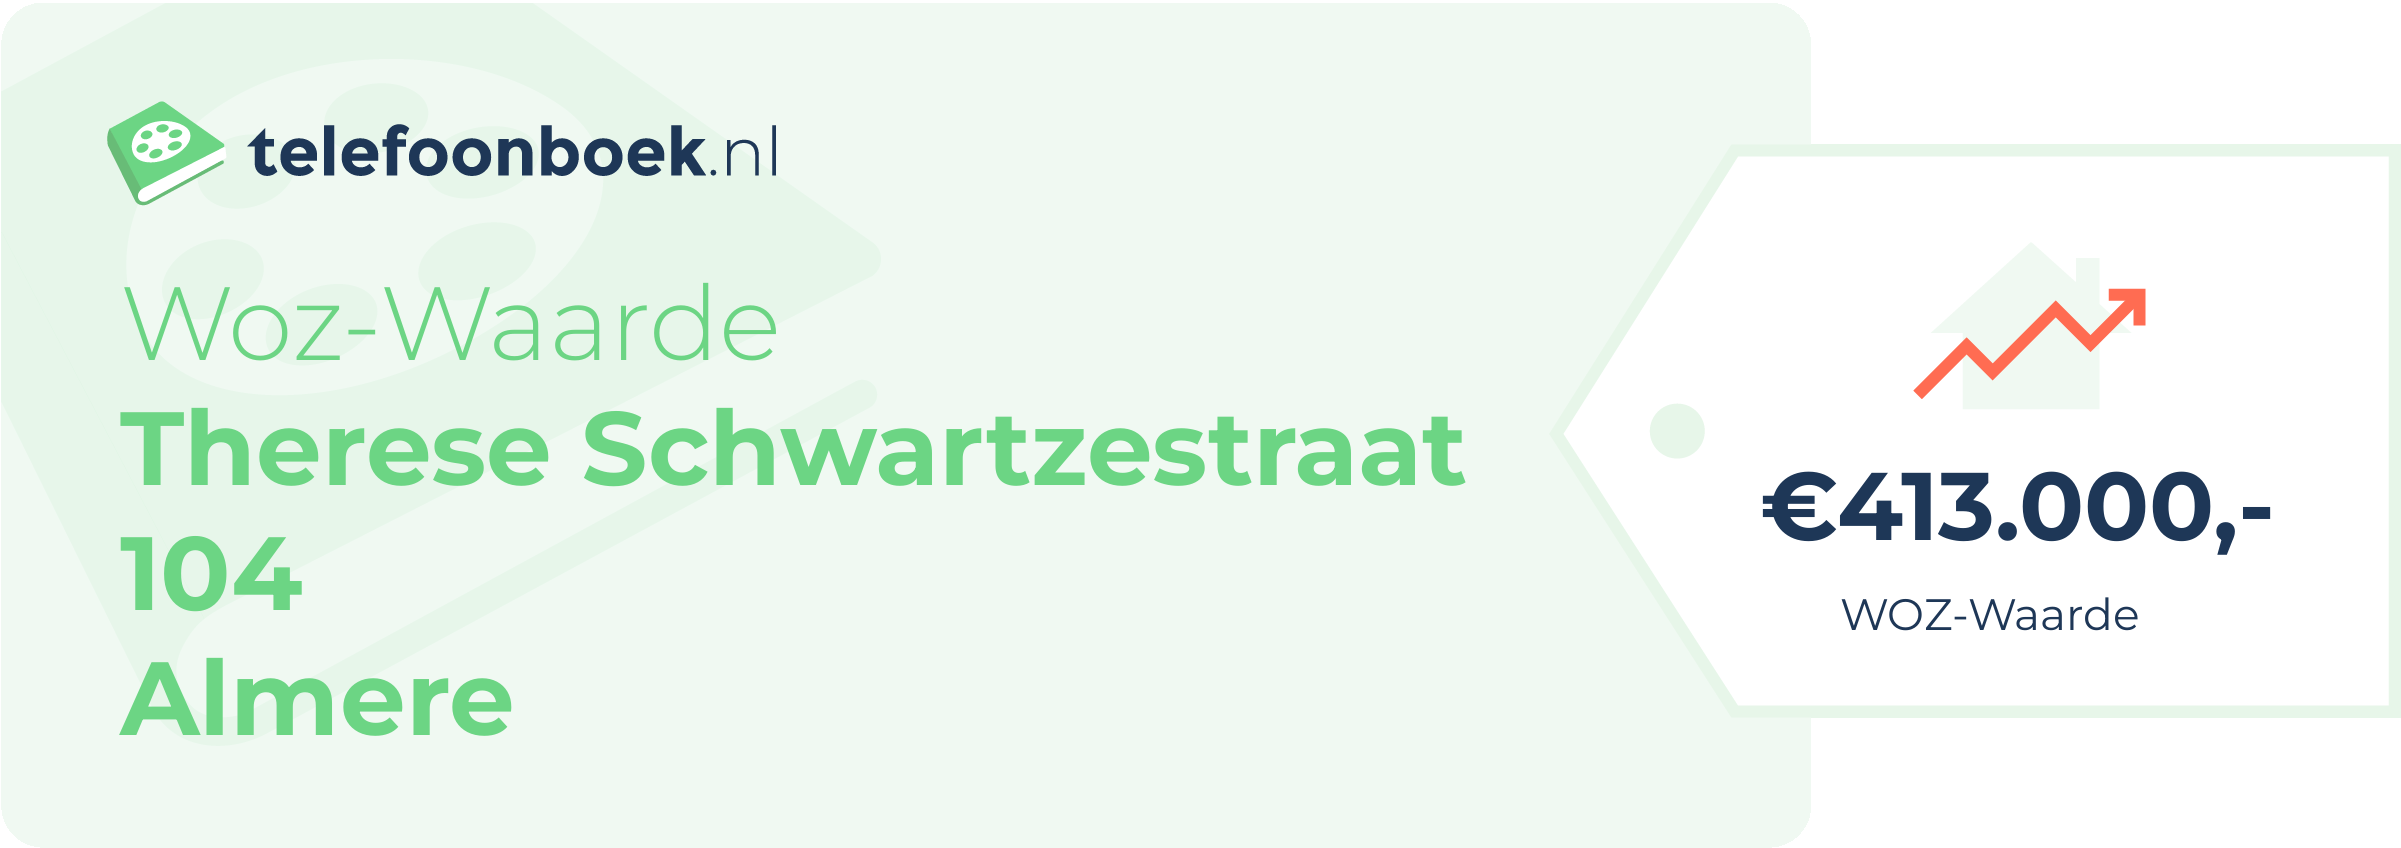 WOZ-waarde Therese Schwartzestraat 104 Almere